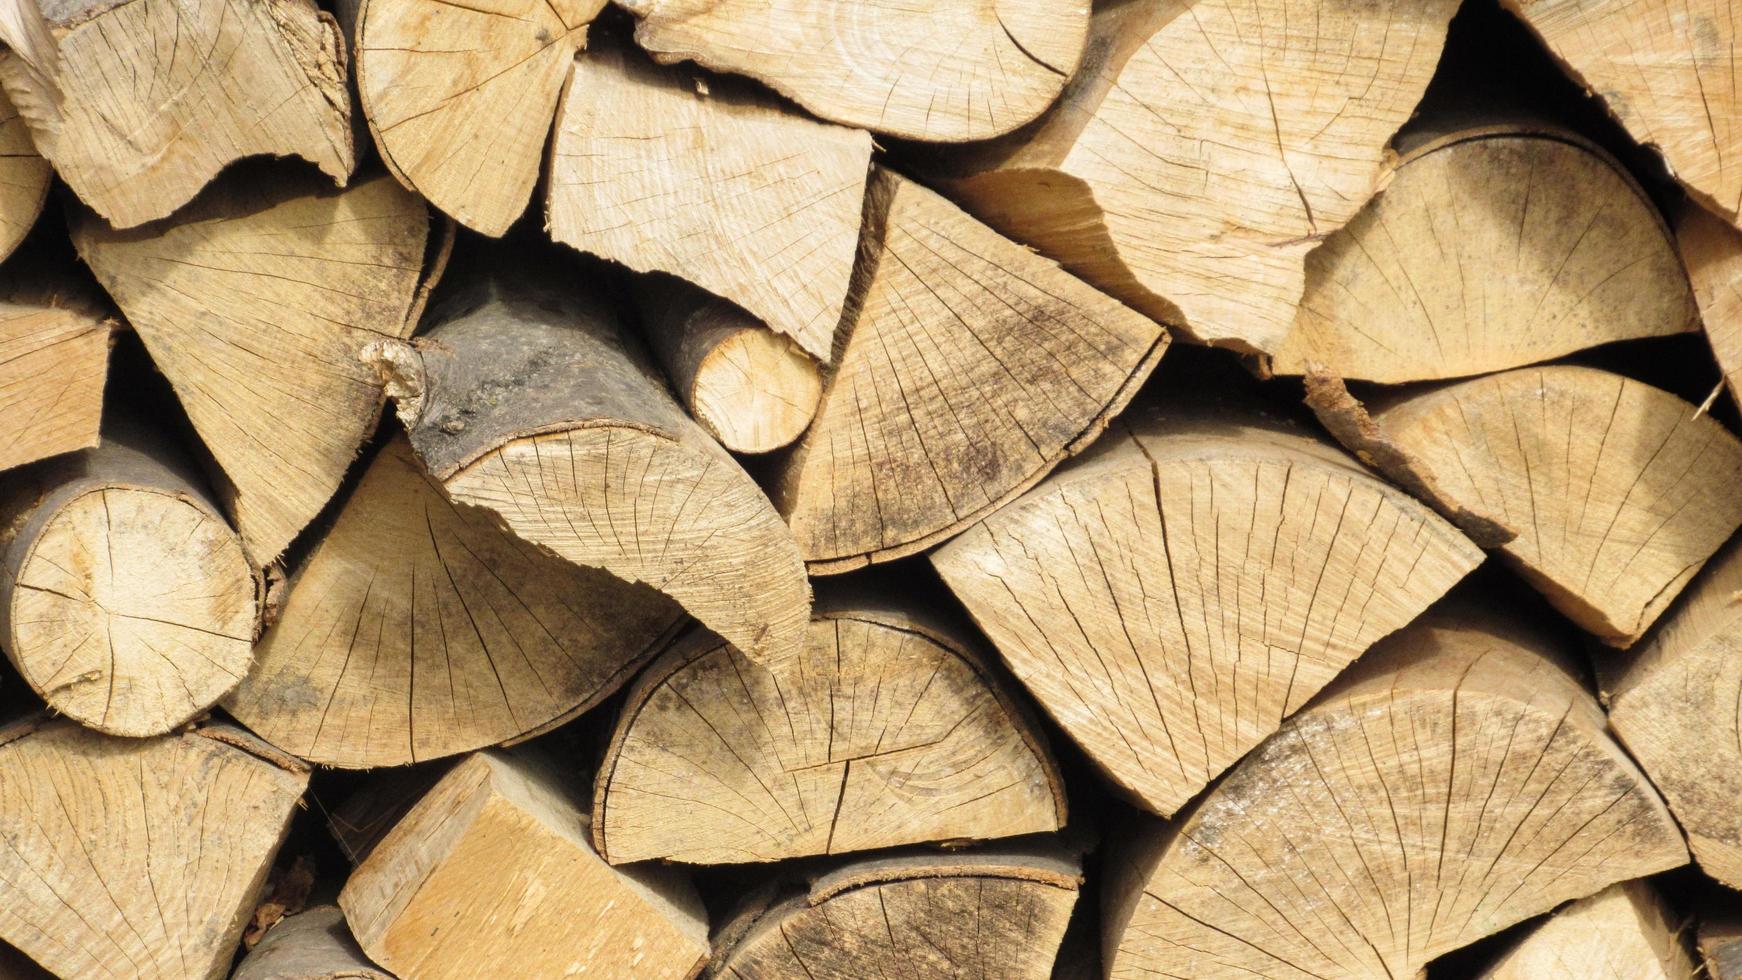 pila de leña. troncos de madera picados apilados en la pila de leña foto